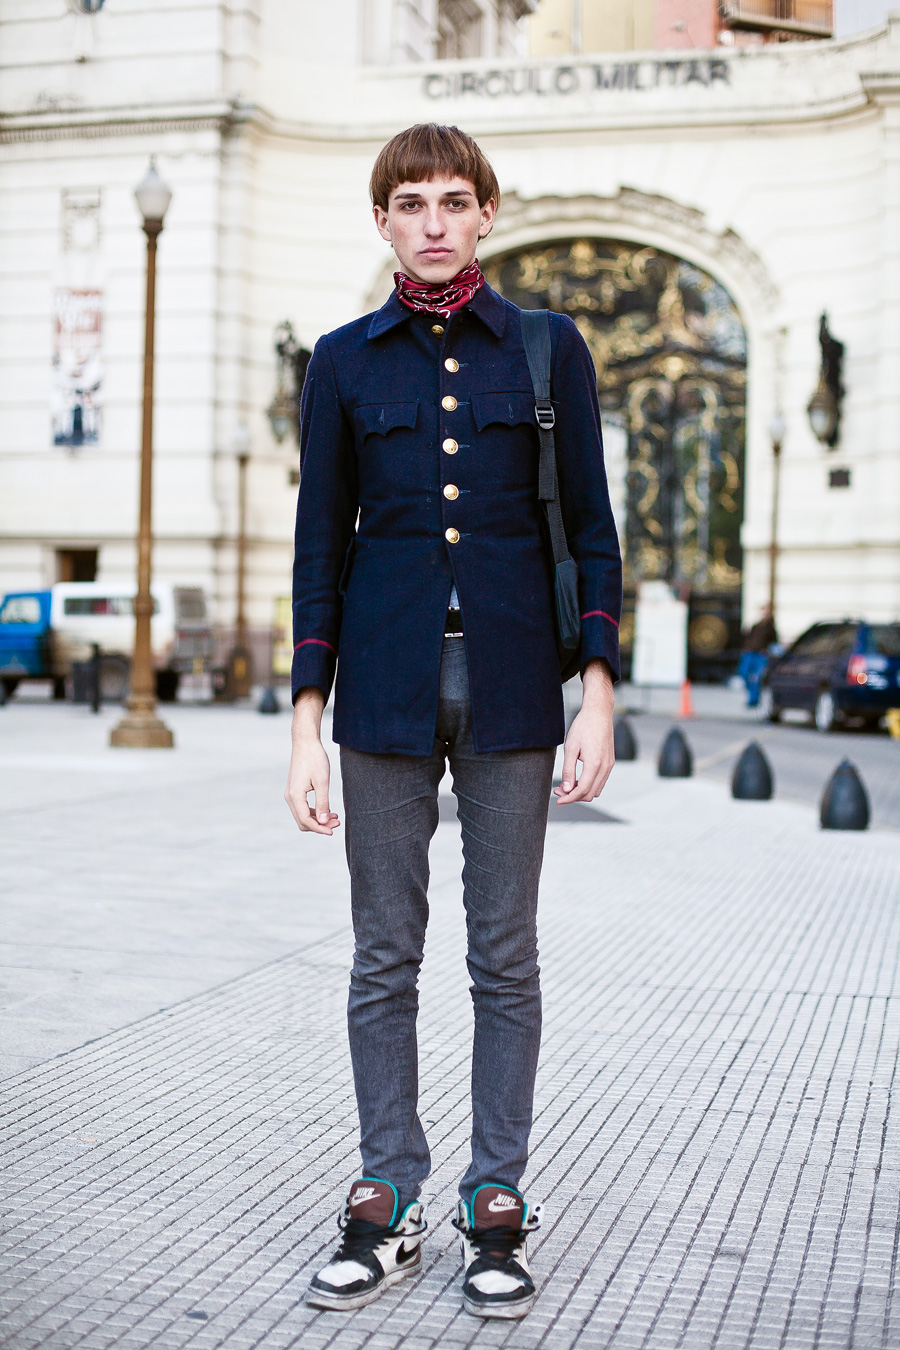 Javier, 19 años, estudiante de producción de moda.